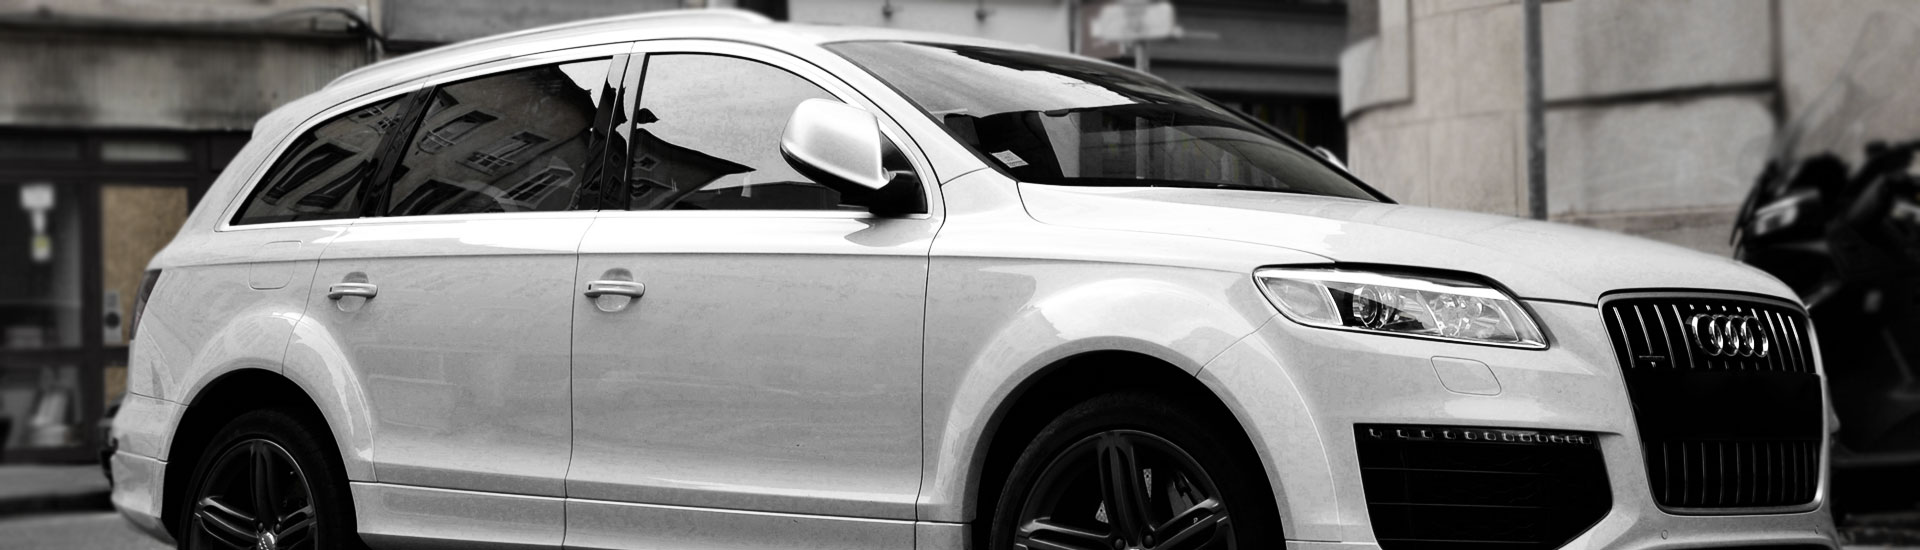 Audi Q7 Window Tint